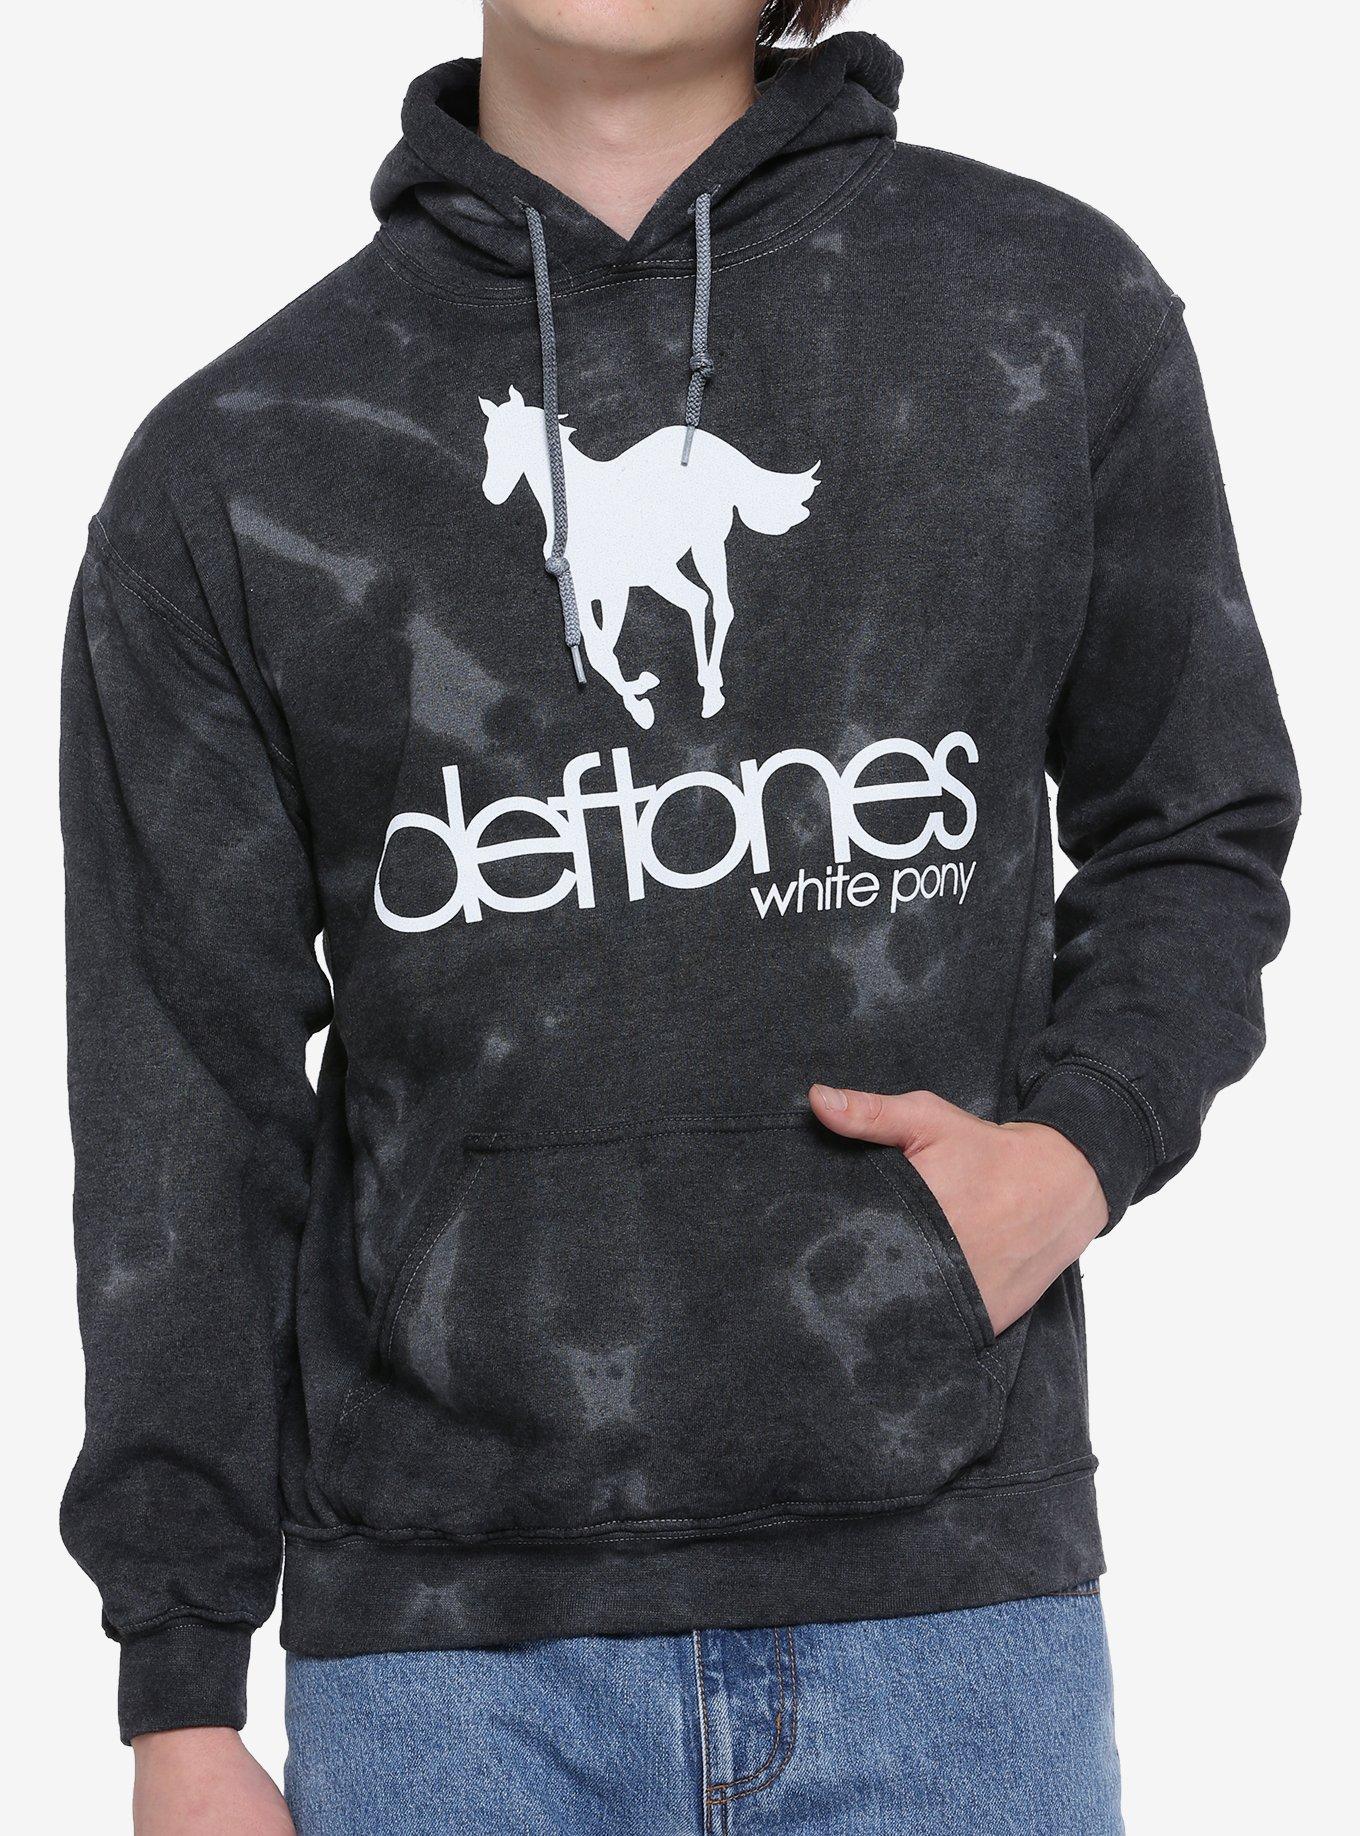 Deftones White Pony Tie-Dye Hoodie, GREY  BLACK, hi-res